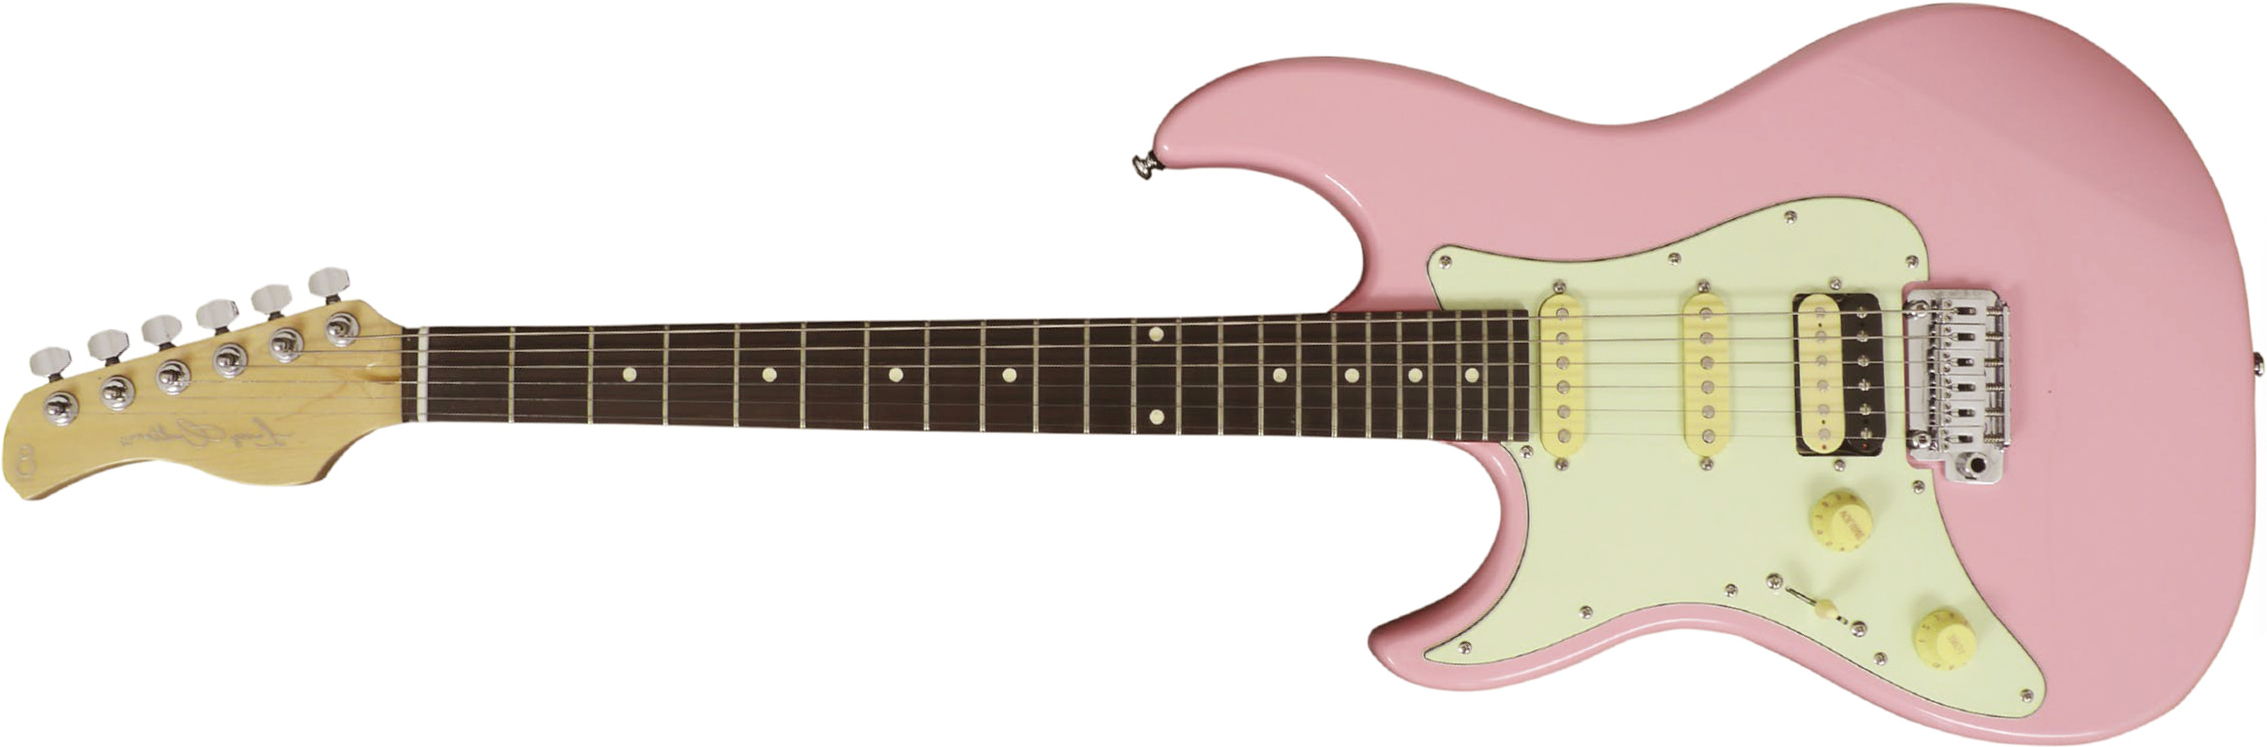 Sire Larry Carlton S3 Lh Signature Gaucher Hss Trem Rw - Pink - Linkshandige elektrische gitaar - Main picture